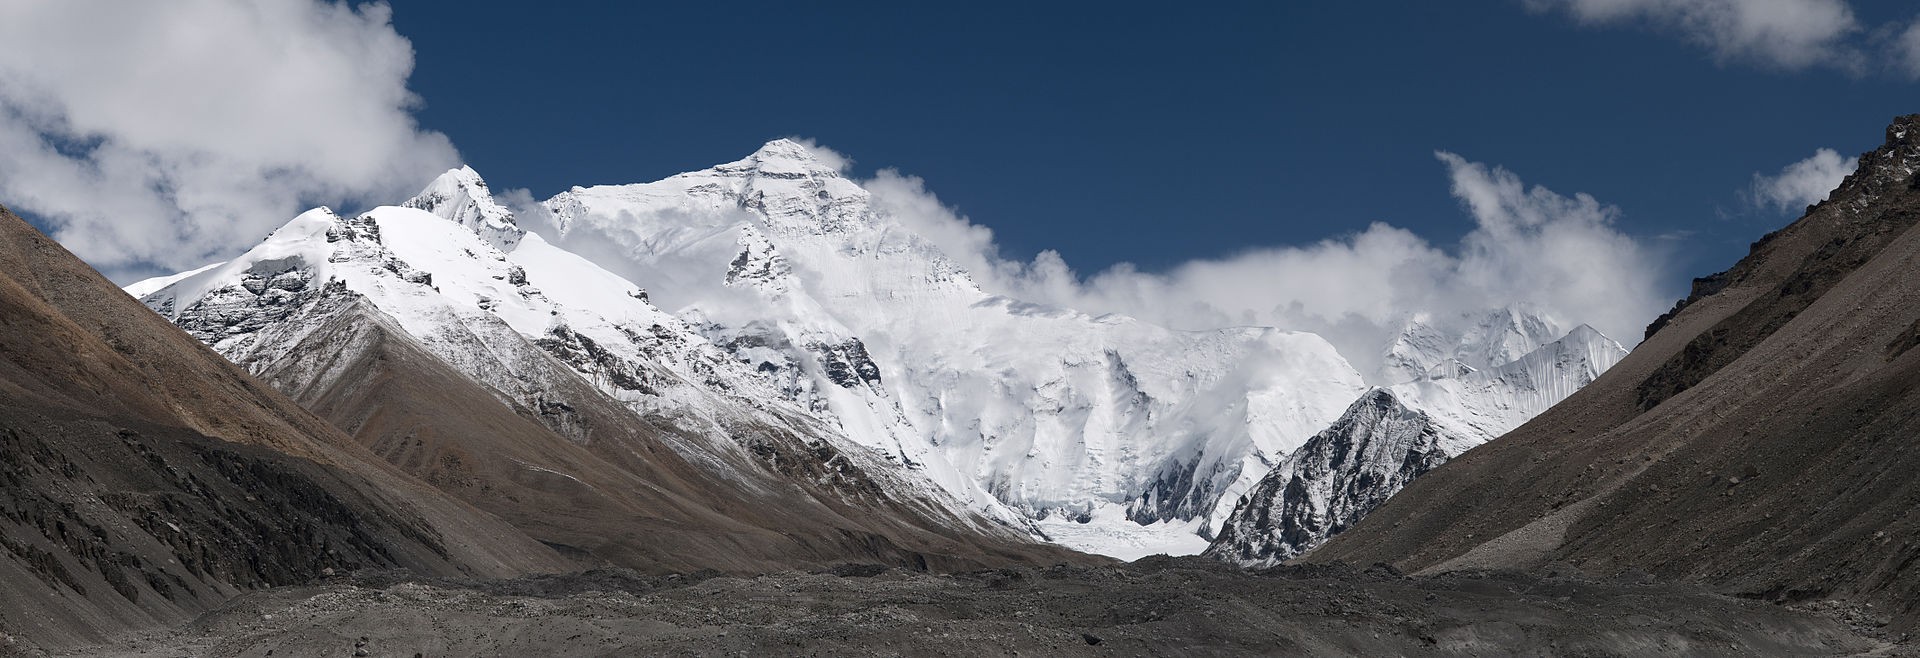 Everest Base Camp Trek | Travel Package - Enlighten Trip